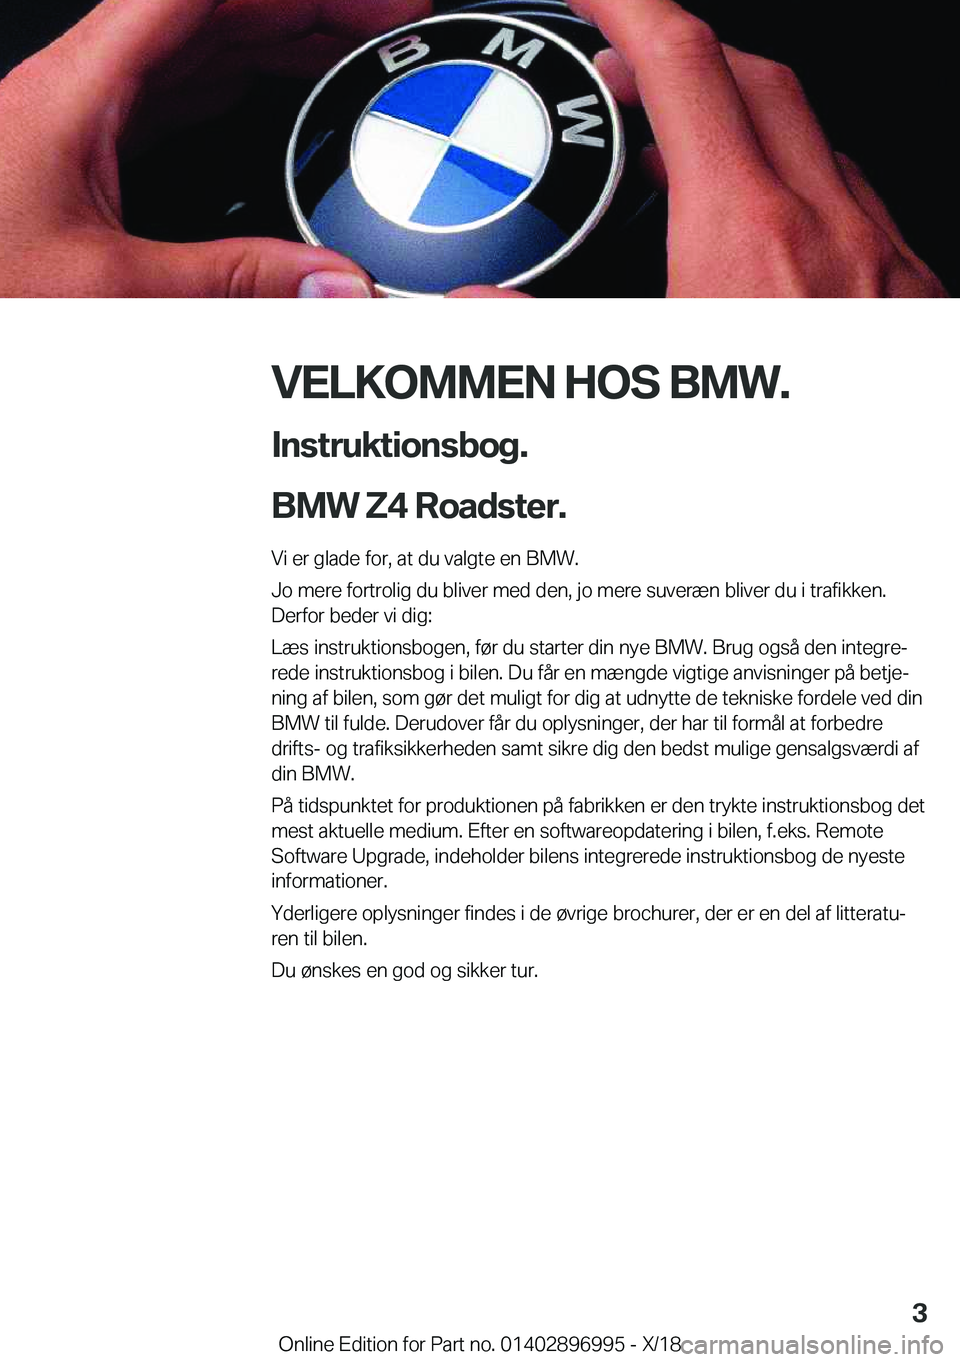 BMW Z4 2019  InstruktionsbØger (in Danish) �V�E�L�K�O�M�M�E�N��H�O�S��B�M�W�.
�I�n�s�t�r�u�k�t�i�o�n�s�b�o�g�.
�B�M�W��Z�4��R�o�a�d�s�t�e�r�. �V�i��e�r��g�l�a�d�e��f�o�r�,��a�t��d�u��v�a�l�g�t�e��e�n��B�M�W�.
�J�o��m�e�r�e��f�o�r